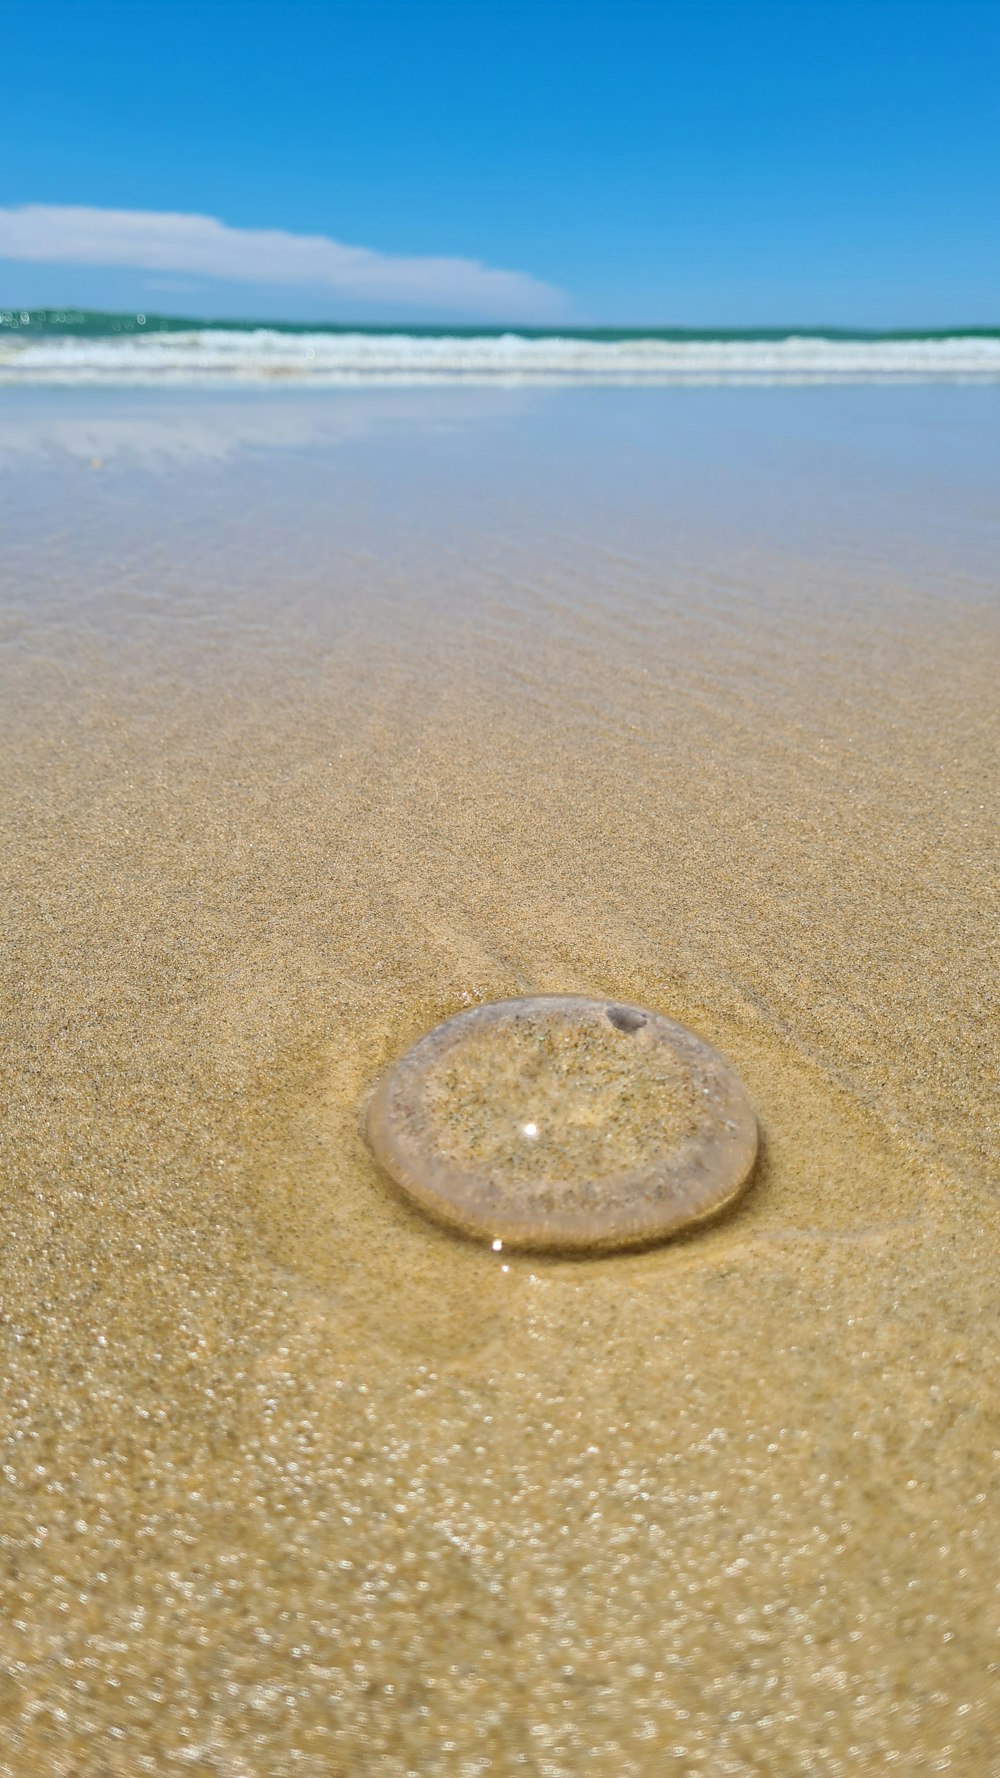 ビーチの砂の中の丸い物体